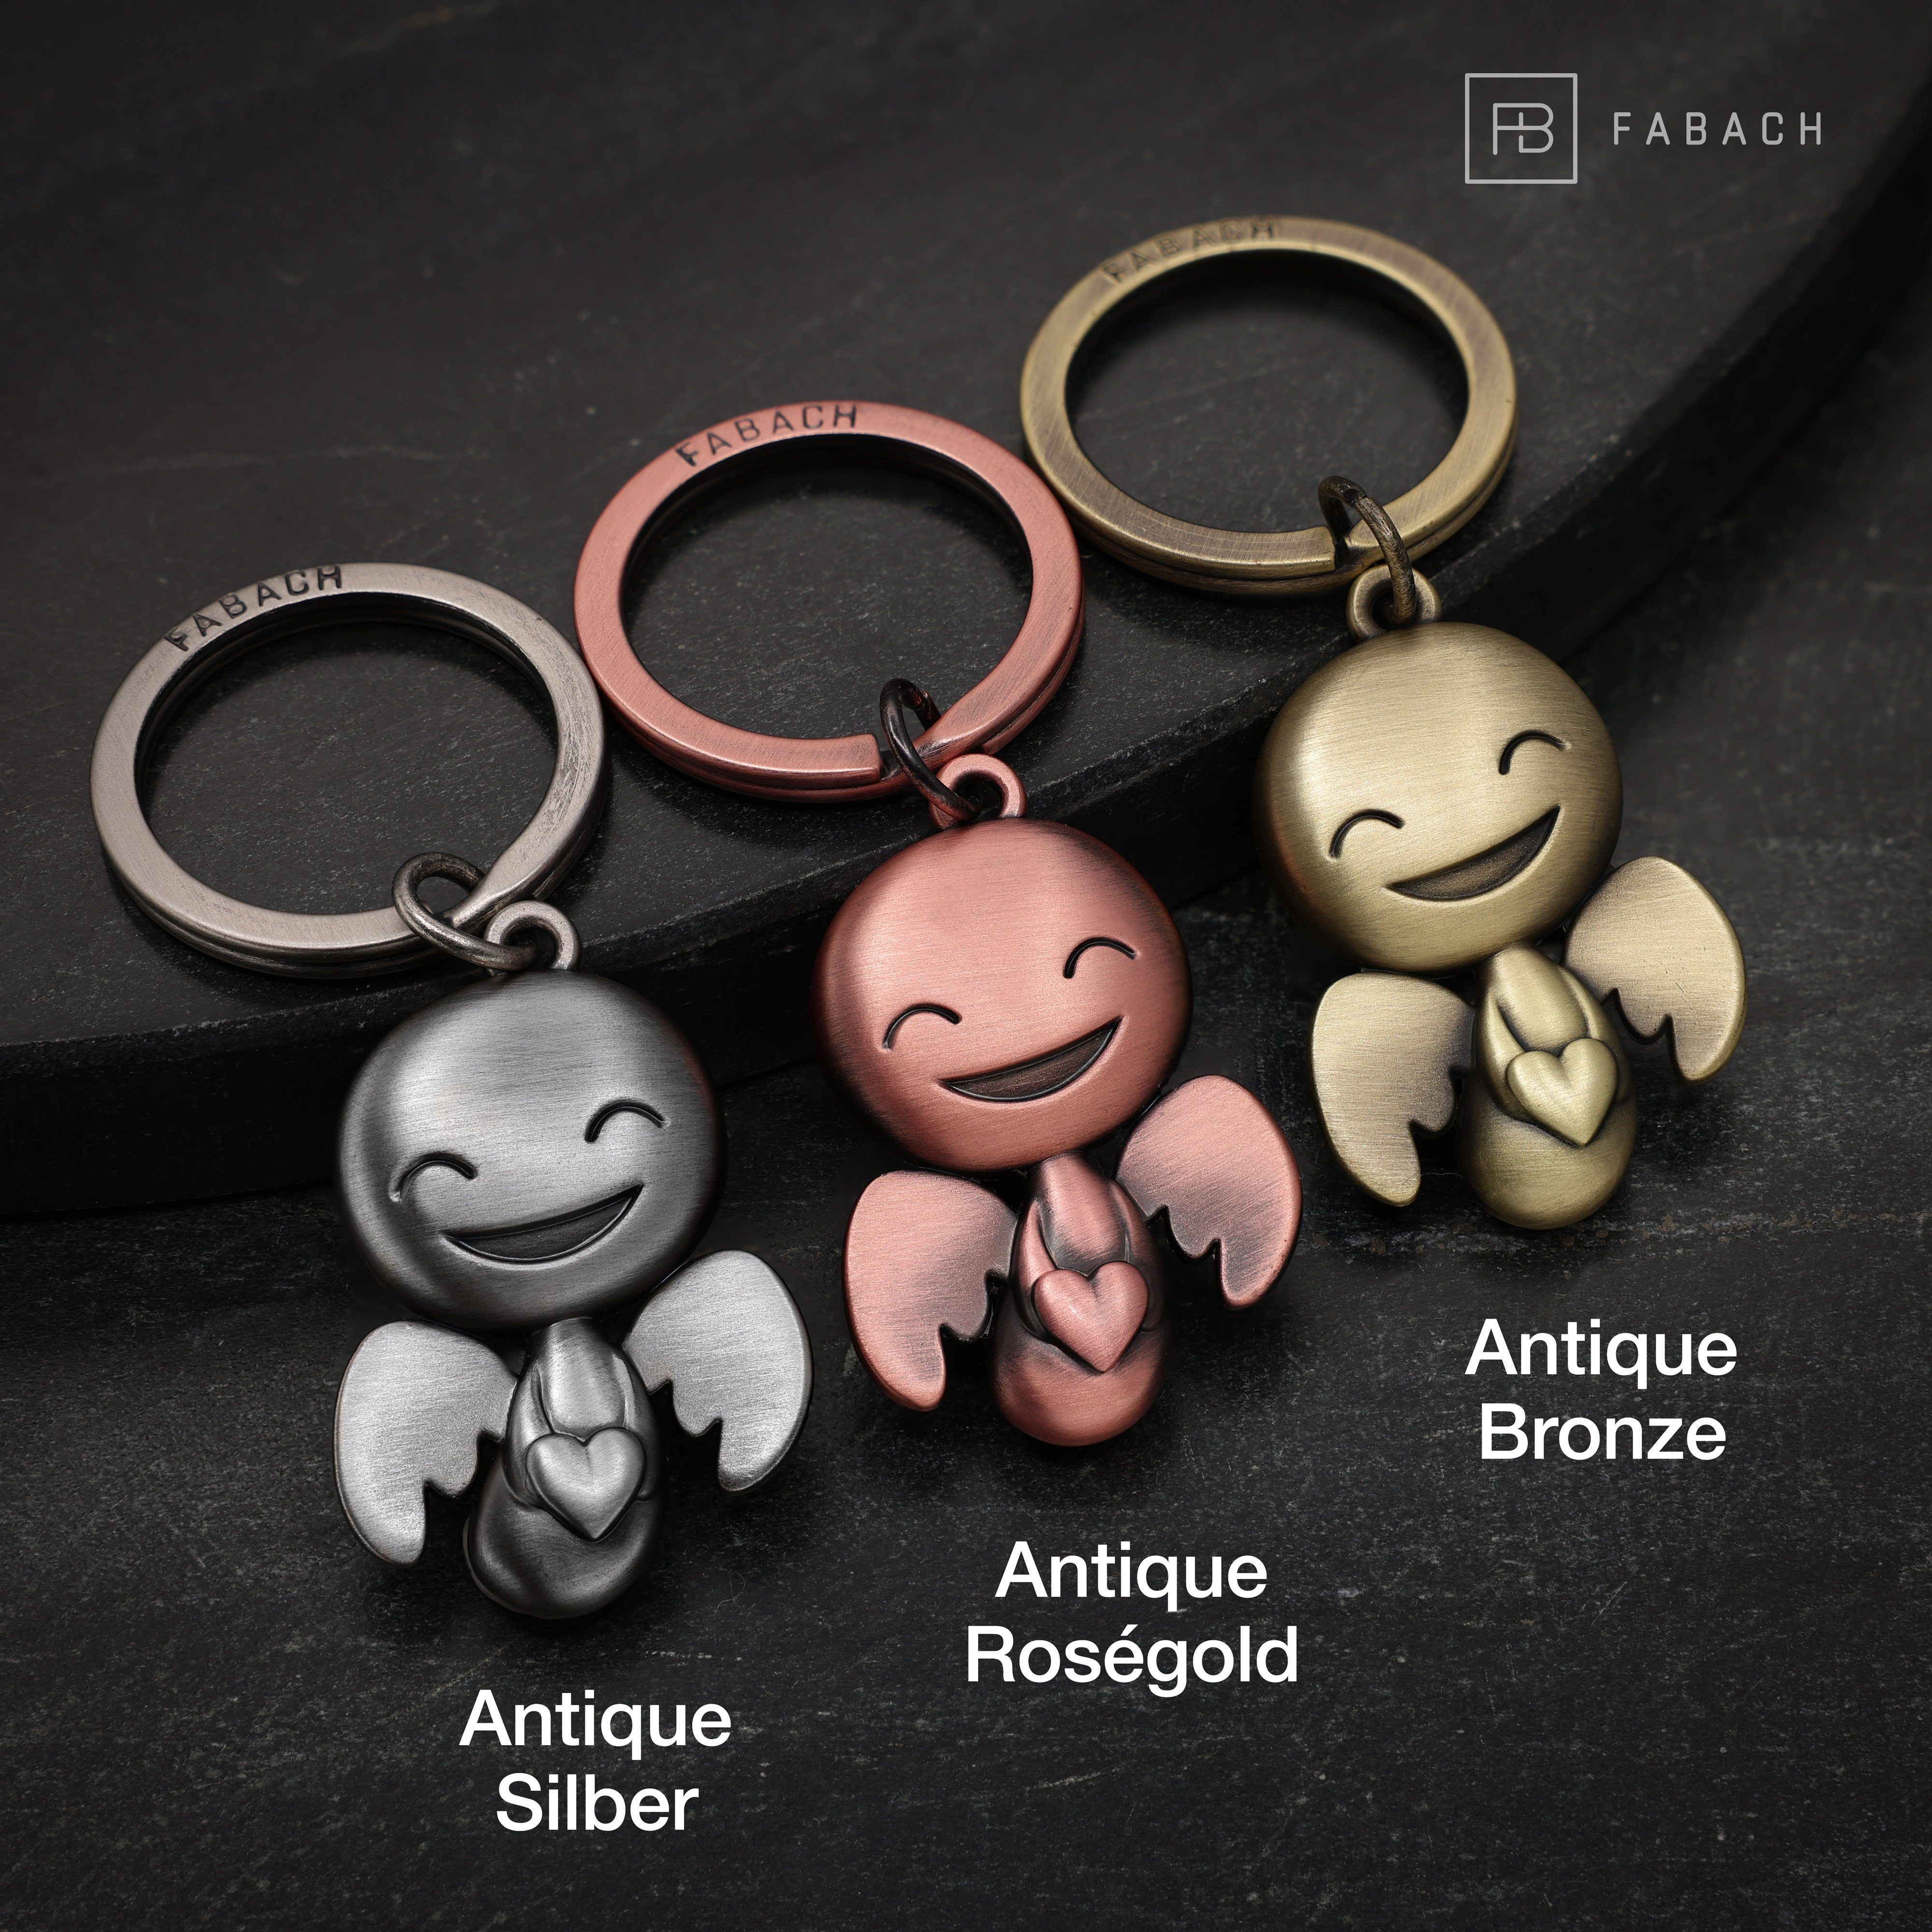 Glücksbringer Bronze Happy Partner Herz - Schlüsselanhänger mit Antique Schutzengel für FABACH Geschenk